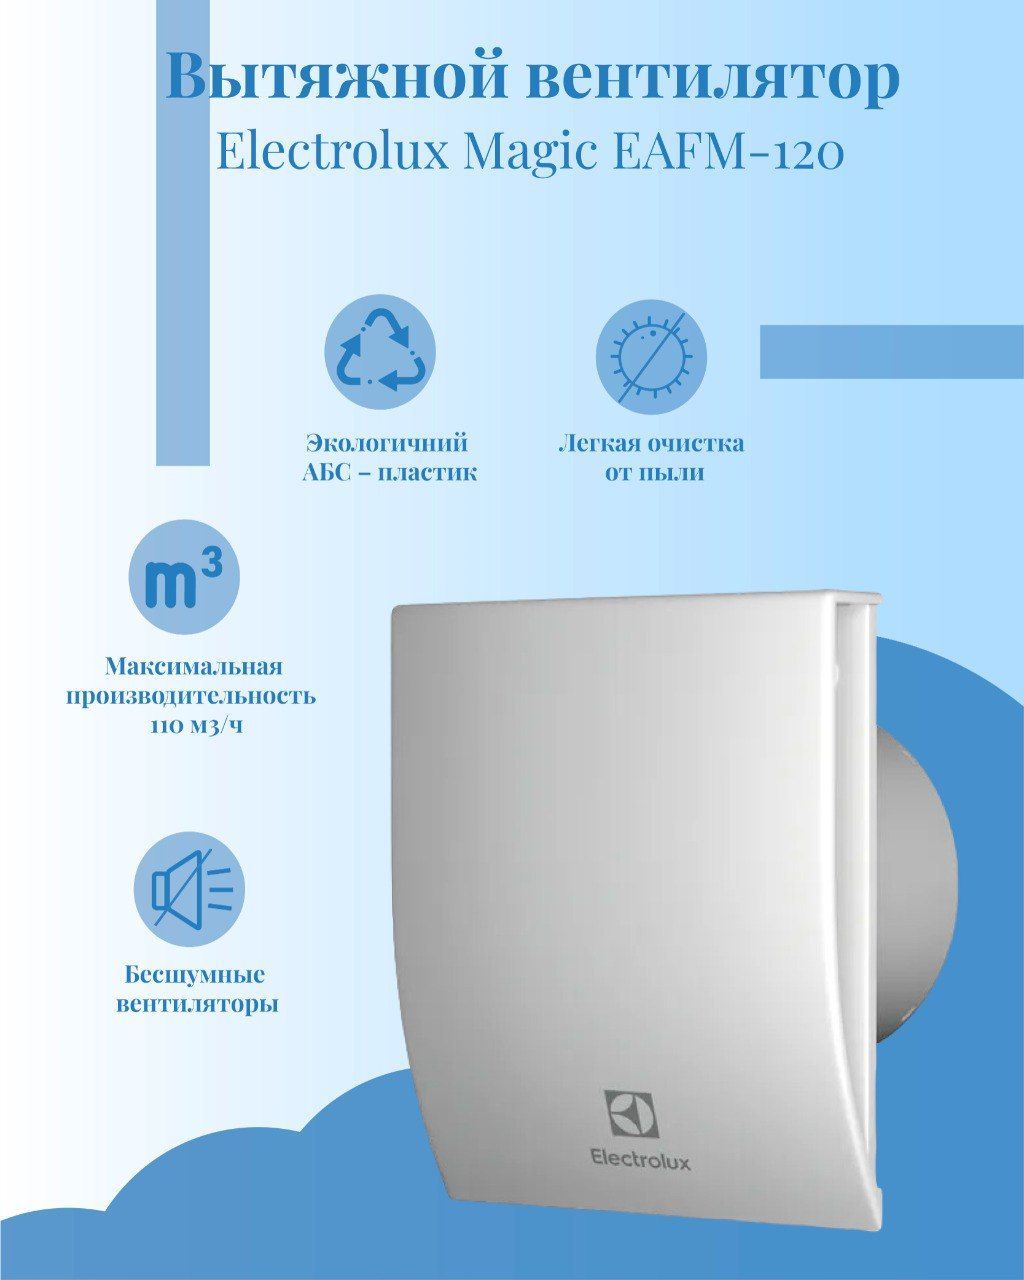 Вытяжной вентилятор electrolux 120. Вытяжной вентилятор Electrolux Magic EAFM-120. Вентилятор вытяжной Electrolux Magic EAFM 12. Вентилятор Электролюкс для ванны.